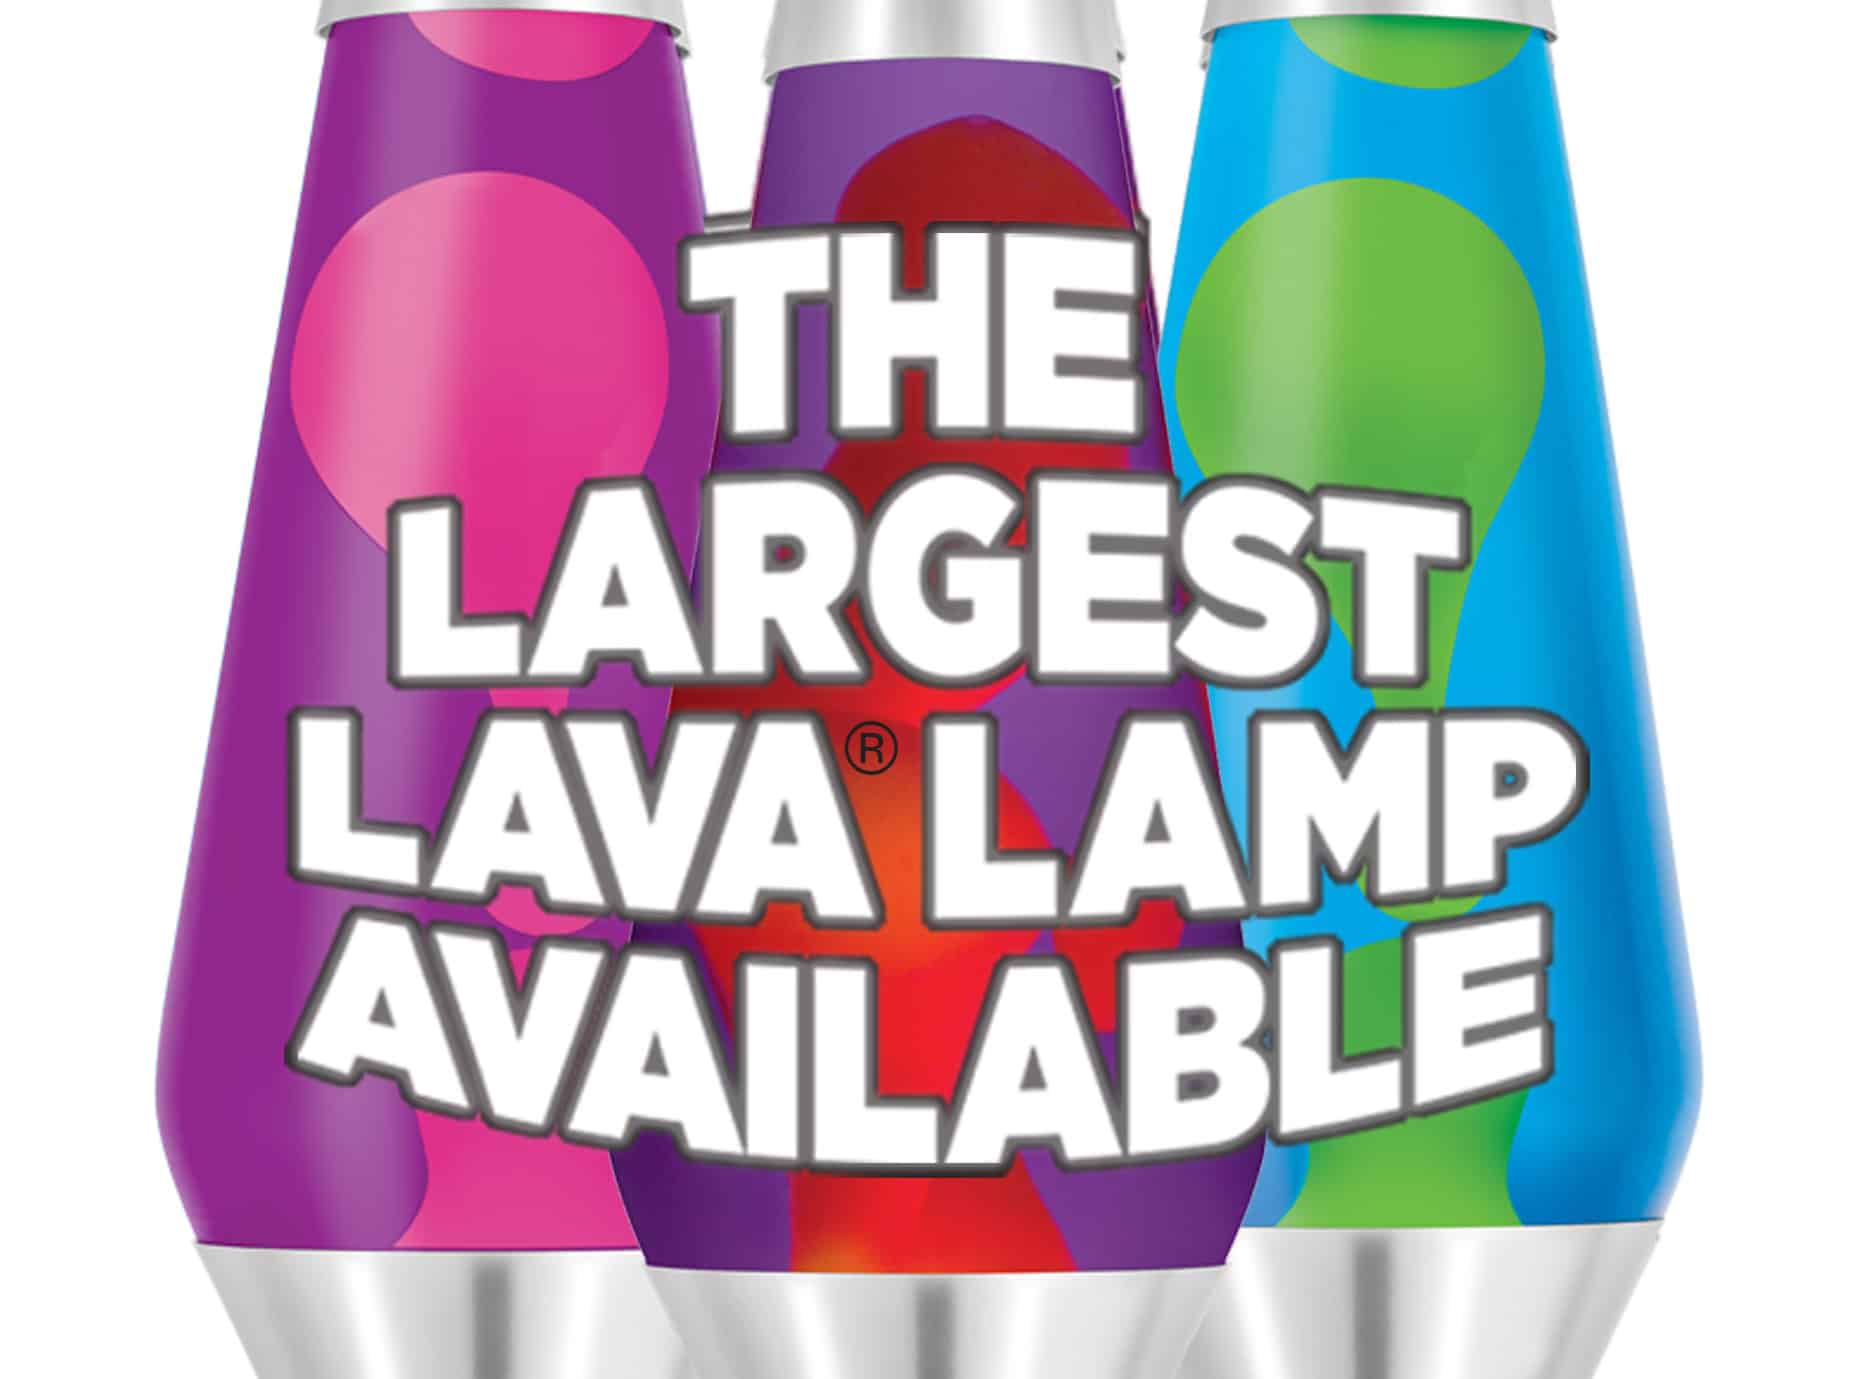 Compress unit etiquette Grande Lava Lamps | 27 Inches Tall, the biggest Lava Lamp